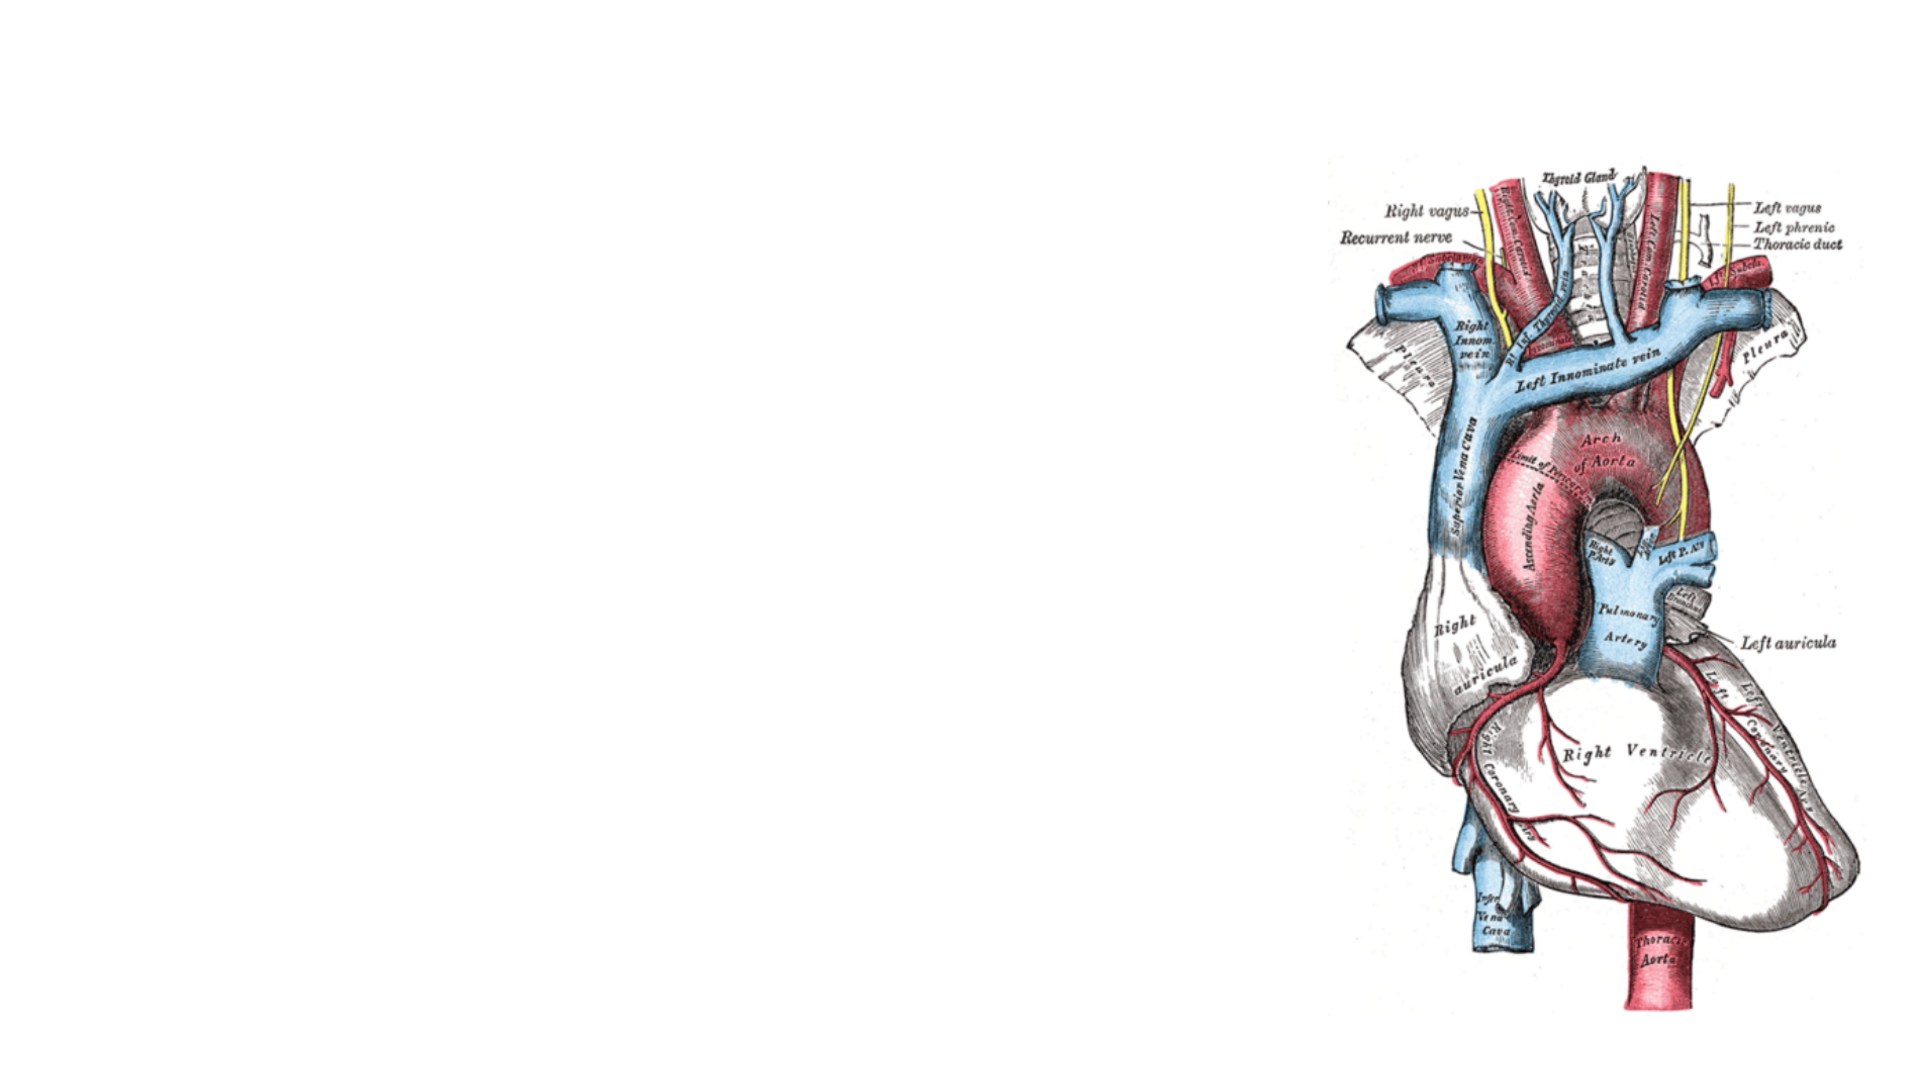 心脏解剖图